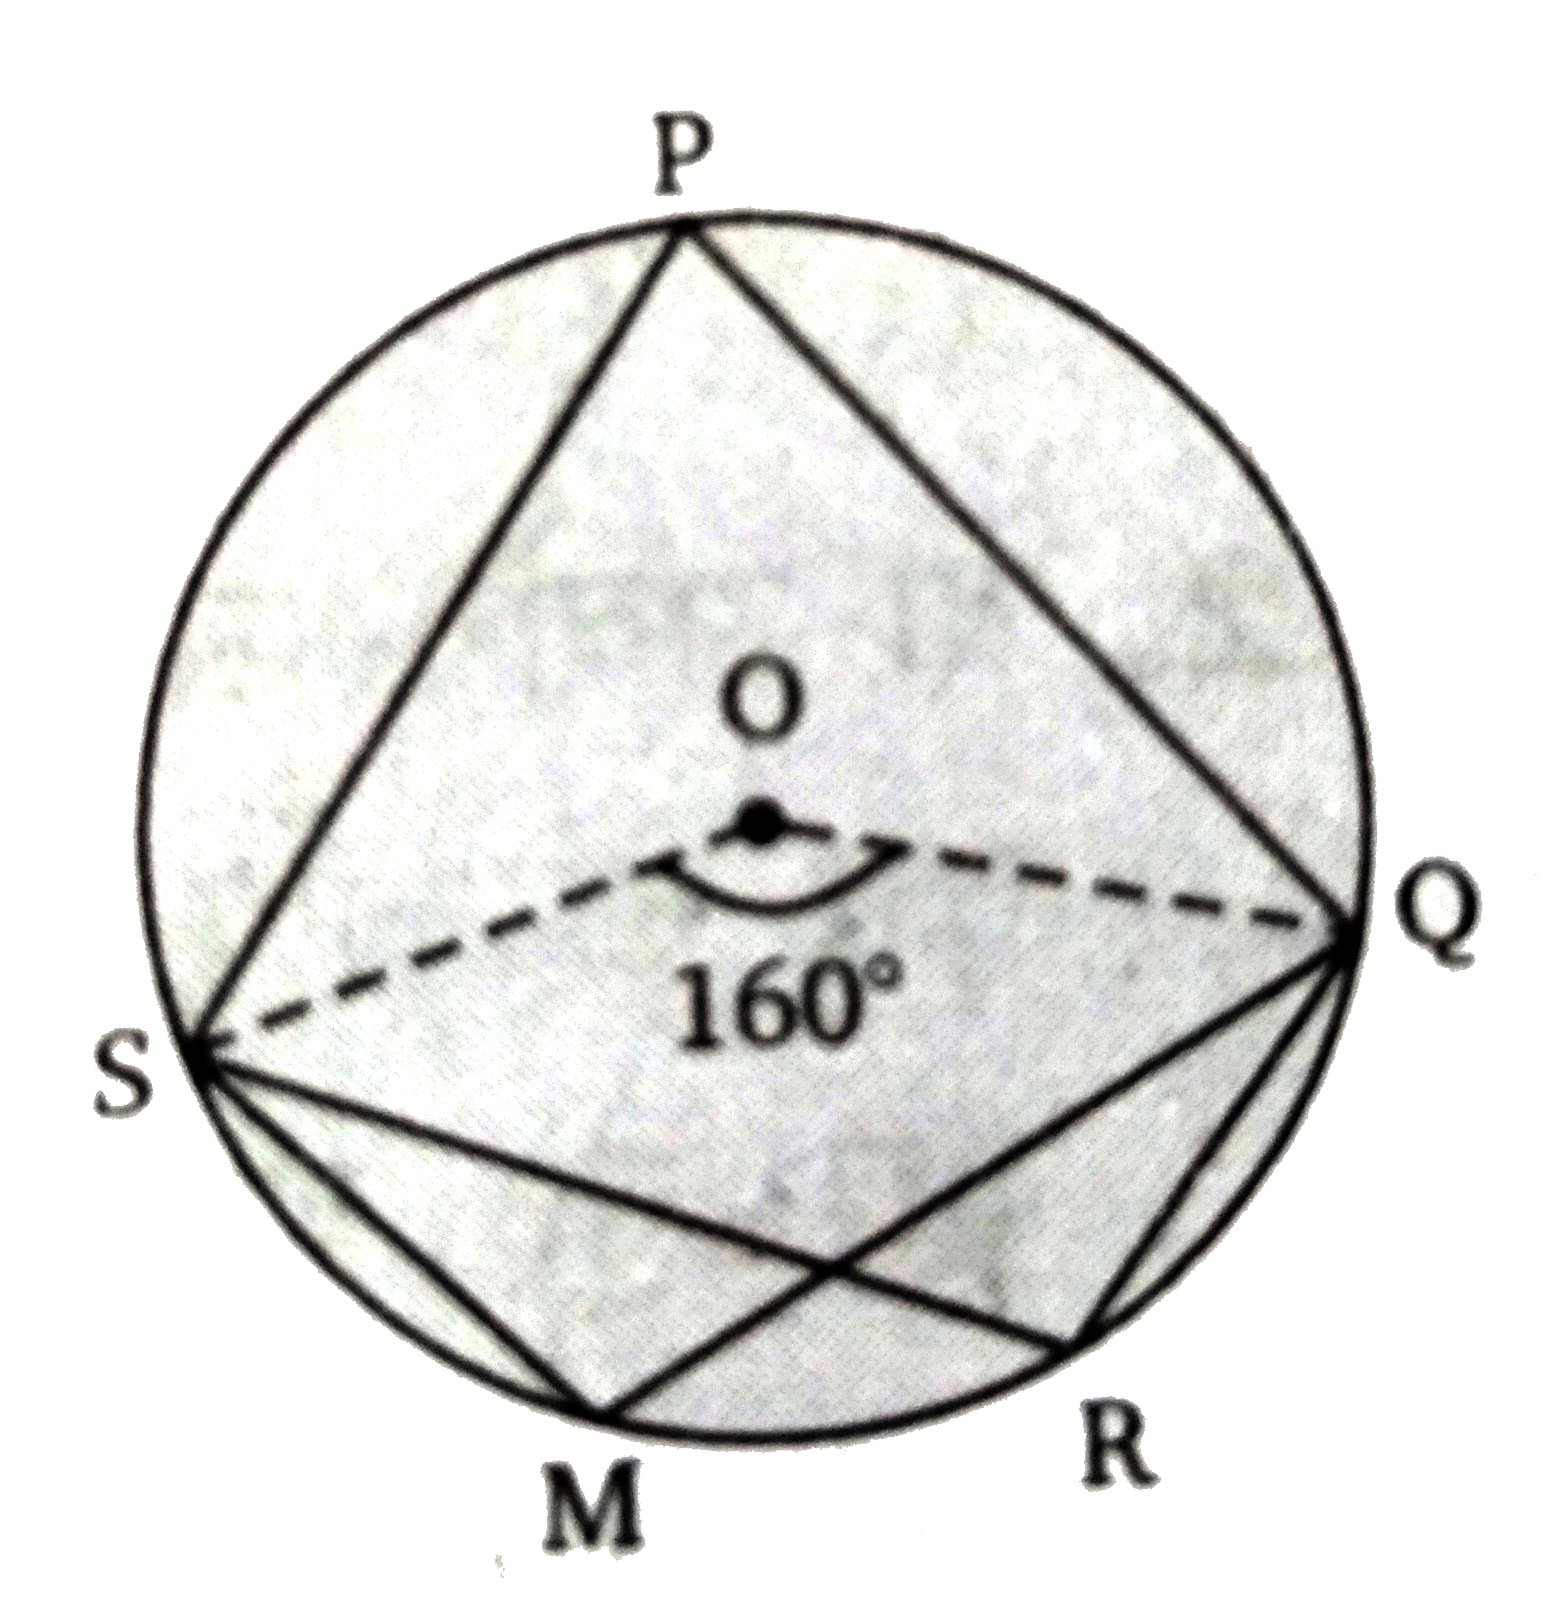 चित्र में, PQRS एक चक्रीय चतुर्भुज है तथा O वृत्त का केन्द्र है। यदि angle QOS = 160 ^(@) है। तो  angle QRS  व  angle QMS  के मान ज्ञात कीजिए।